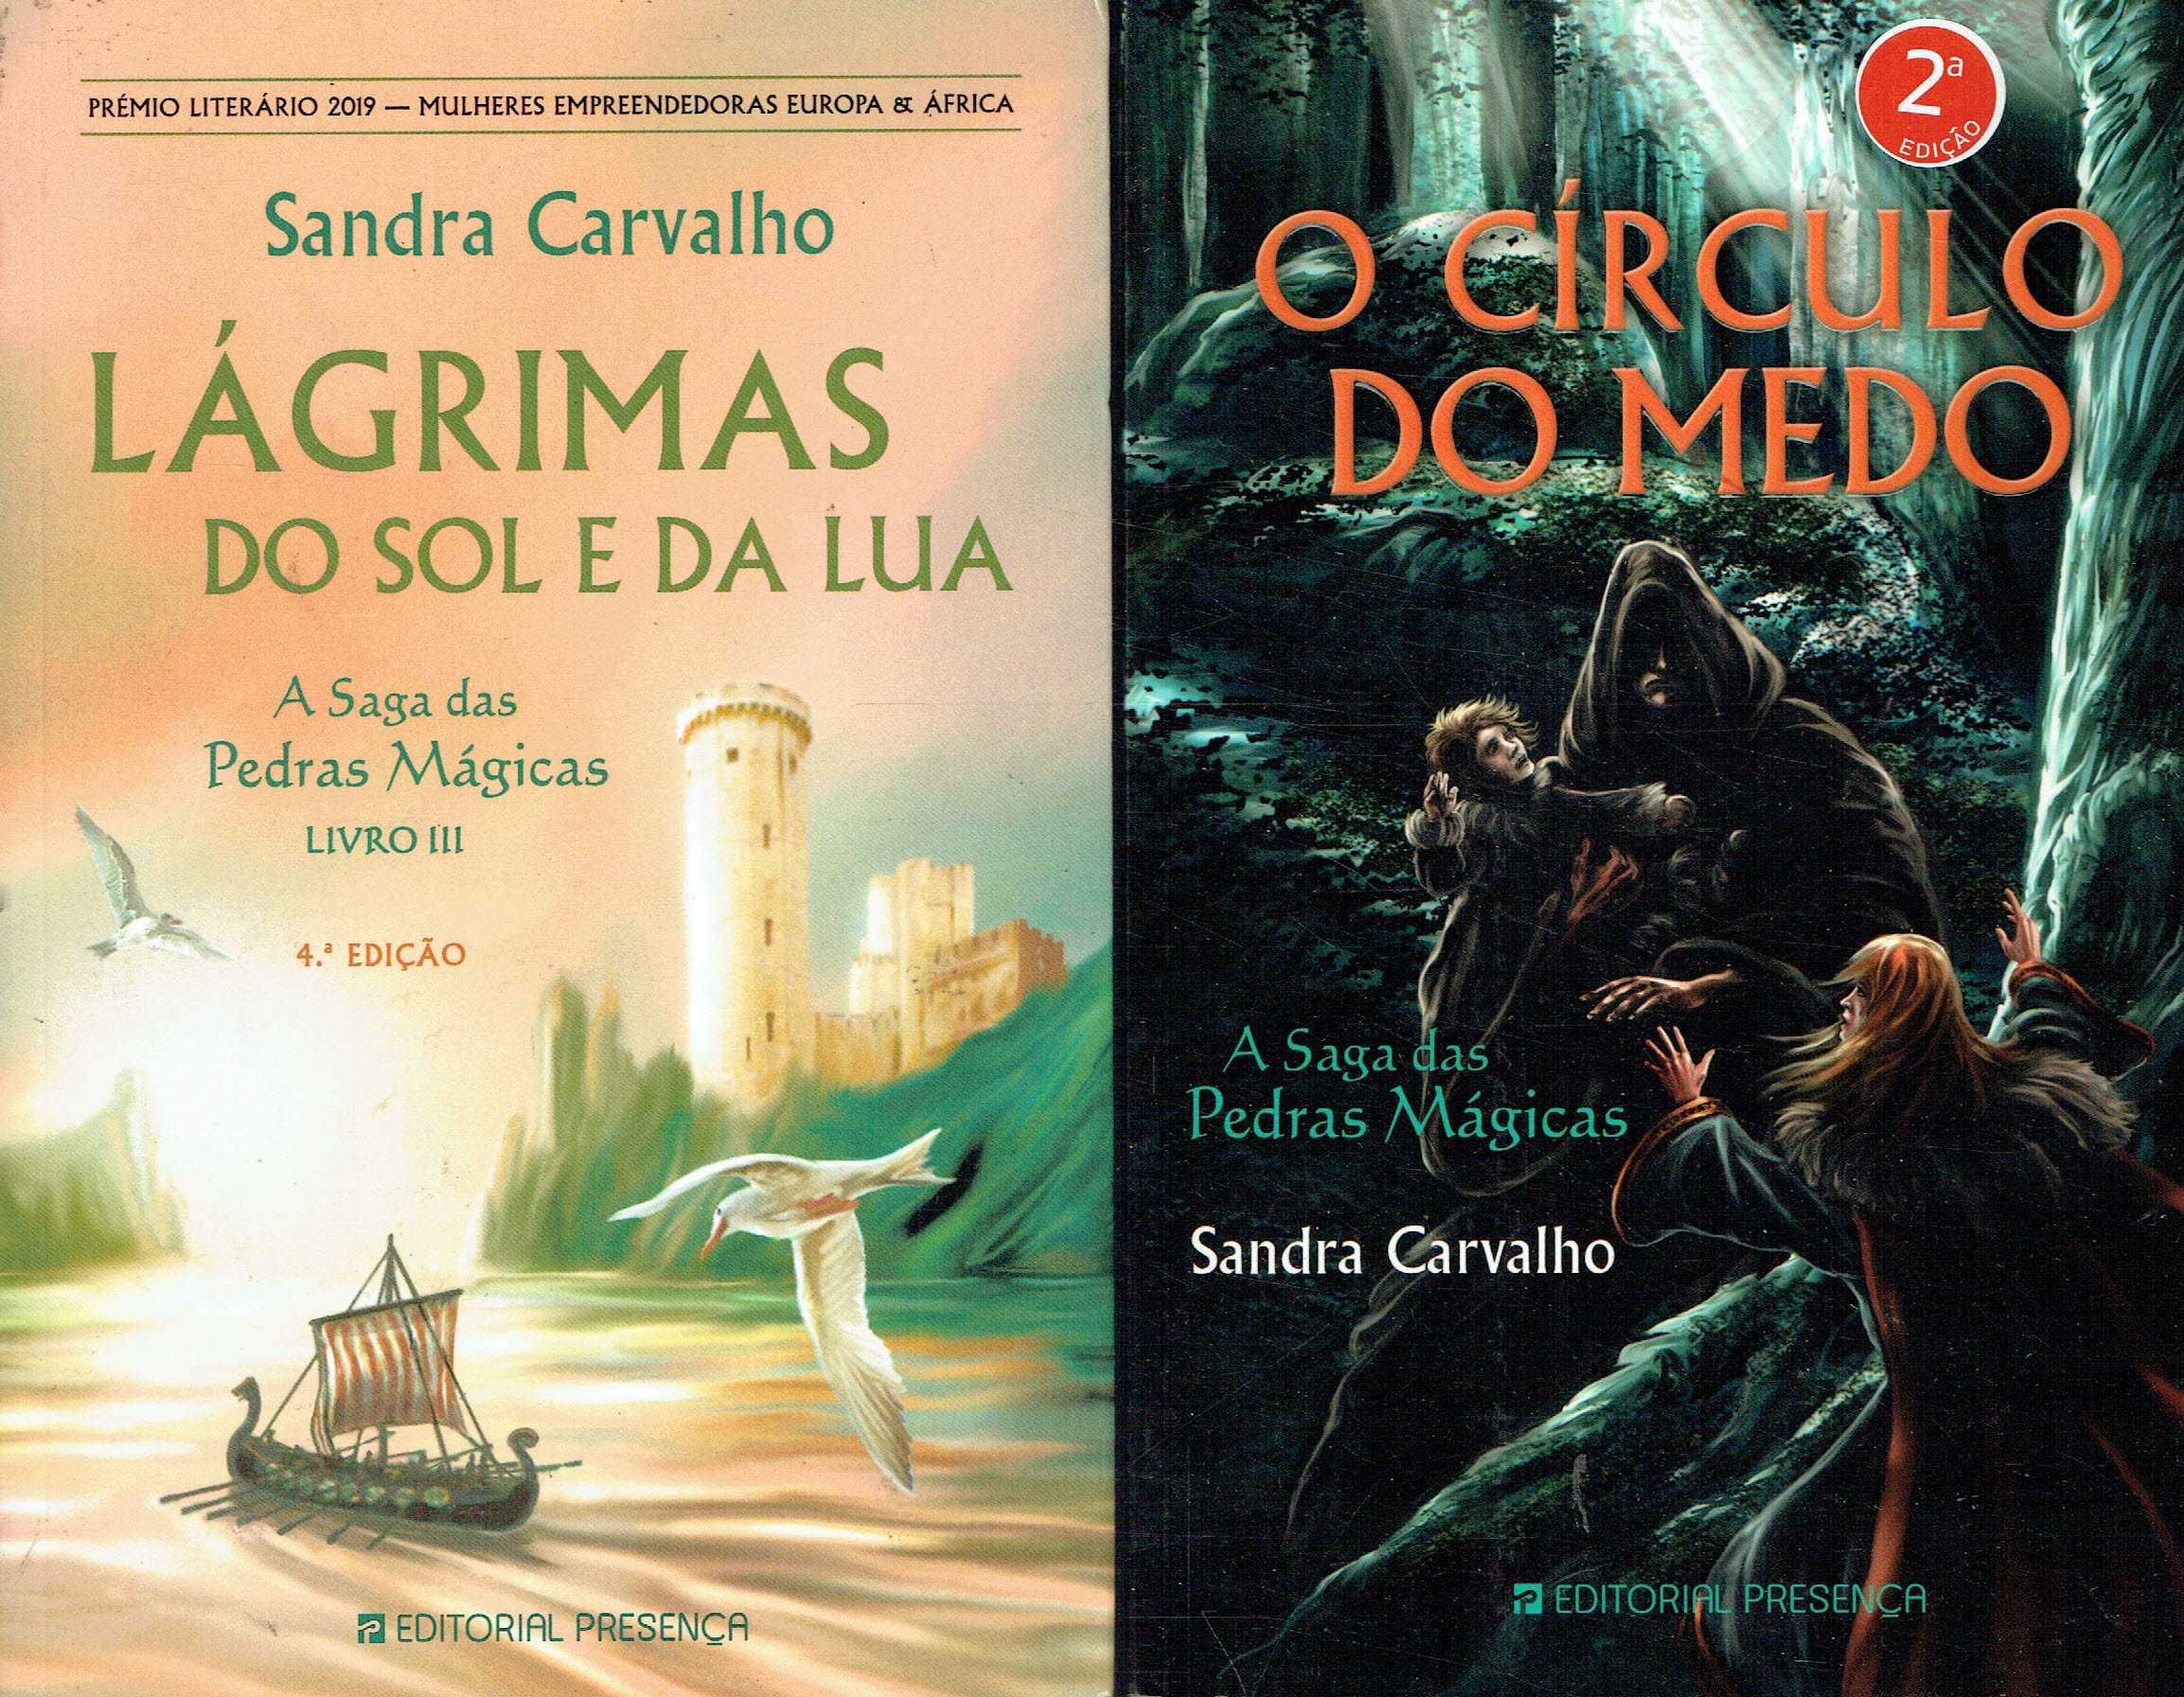 15119

A Saga das Pedras Mágicas - 8 Vols
de Sandra Carvalho